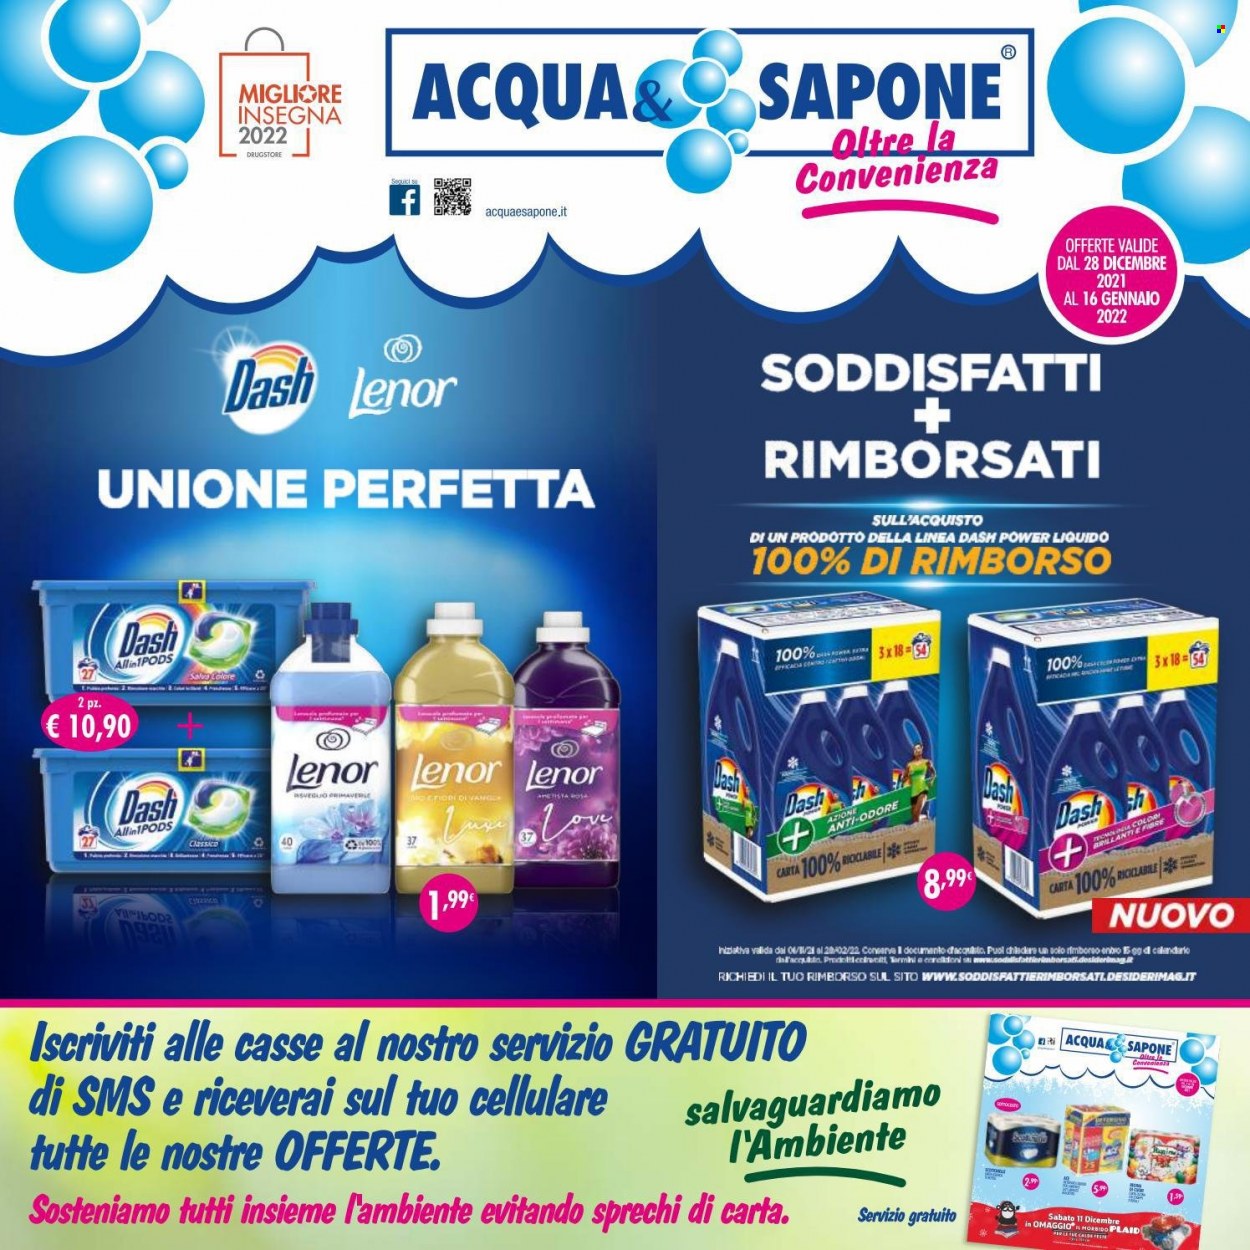 thumbnail - Volantino Acqua & Sapone - 28/12/2021 - 16/1/2022 - Prodotti in offerta - Lenor, Dash, sapone. Pagina 1.